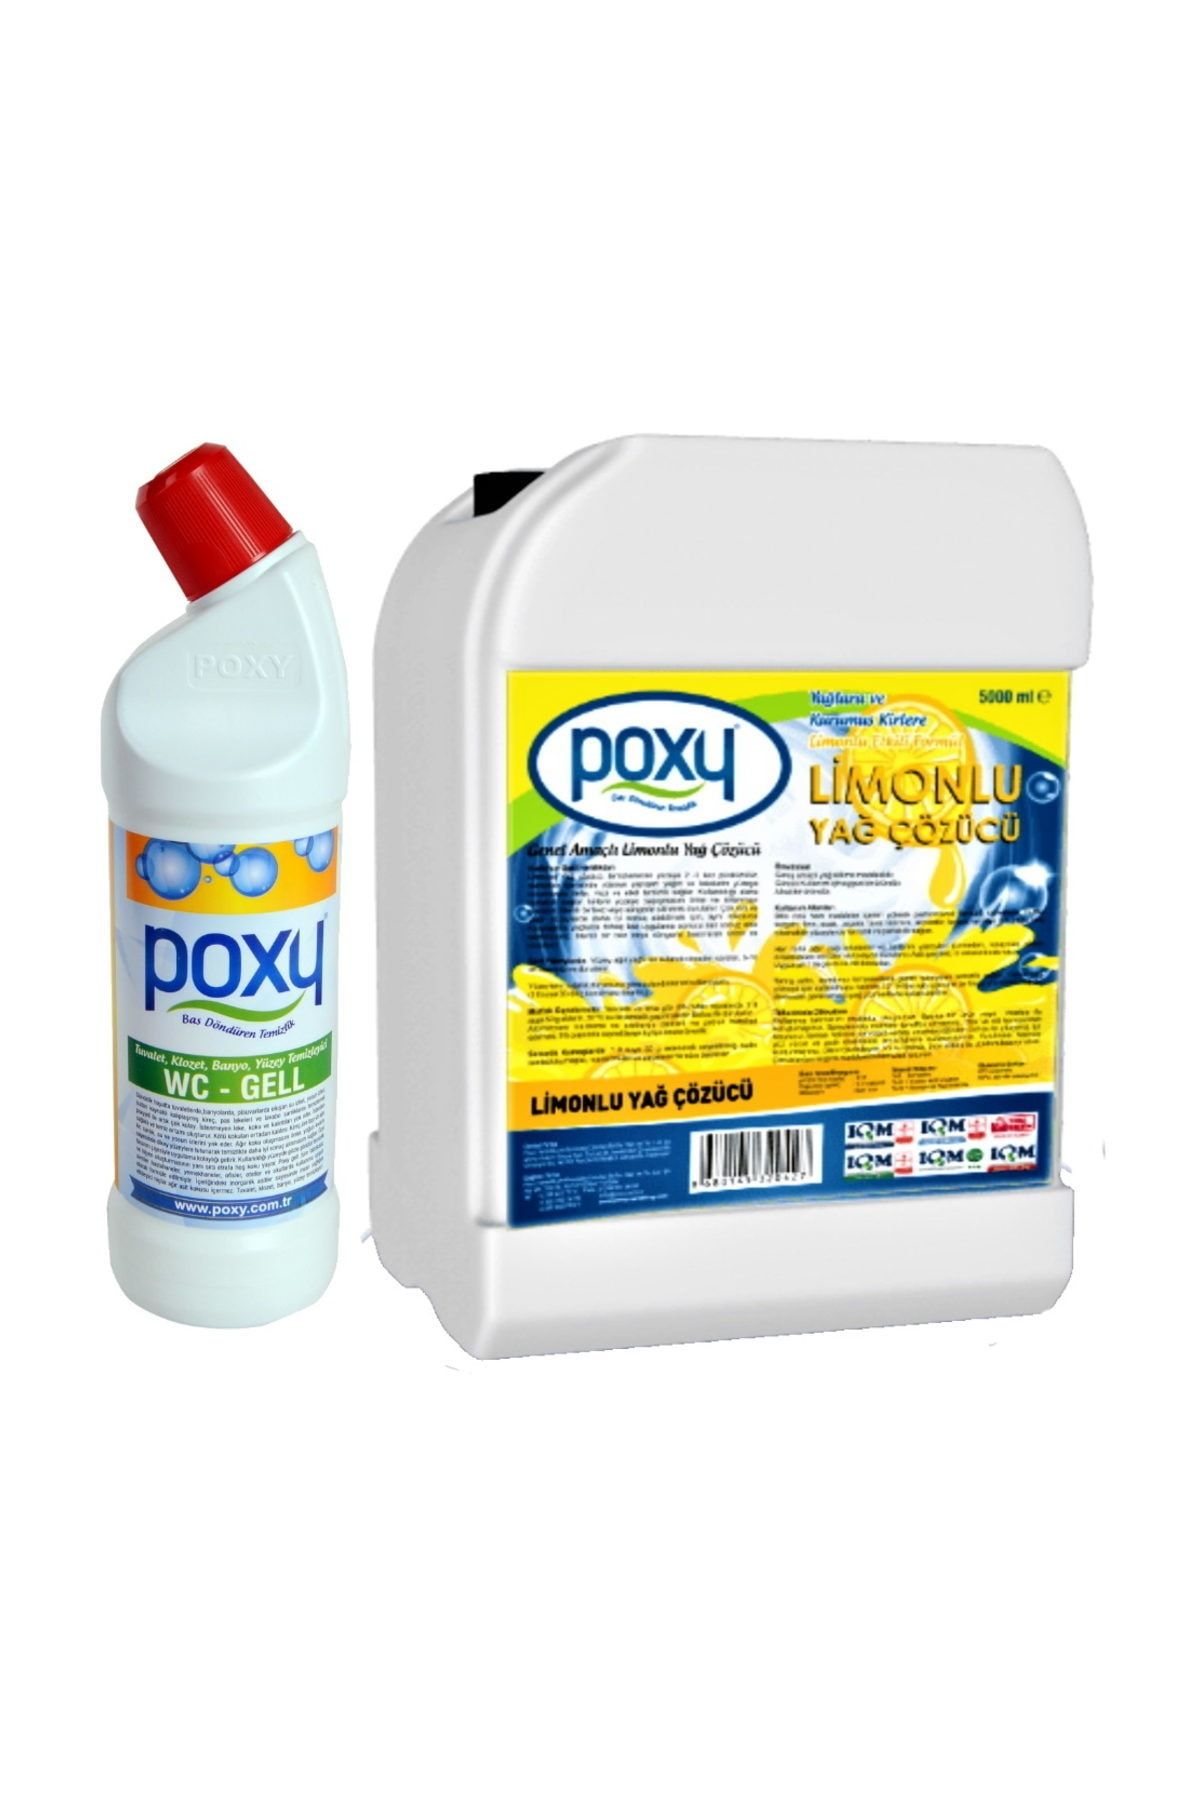 Poxy Limonlu Yağ Çözücü 5000 ml+WC JELL 1000 ml